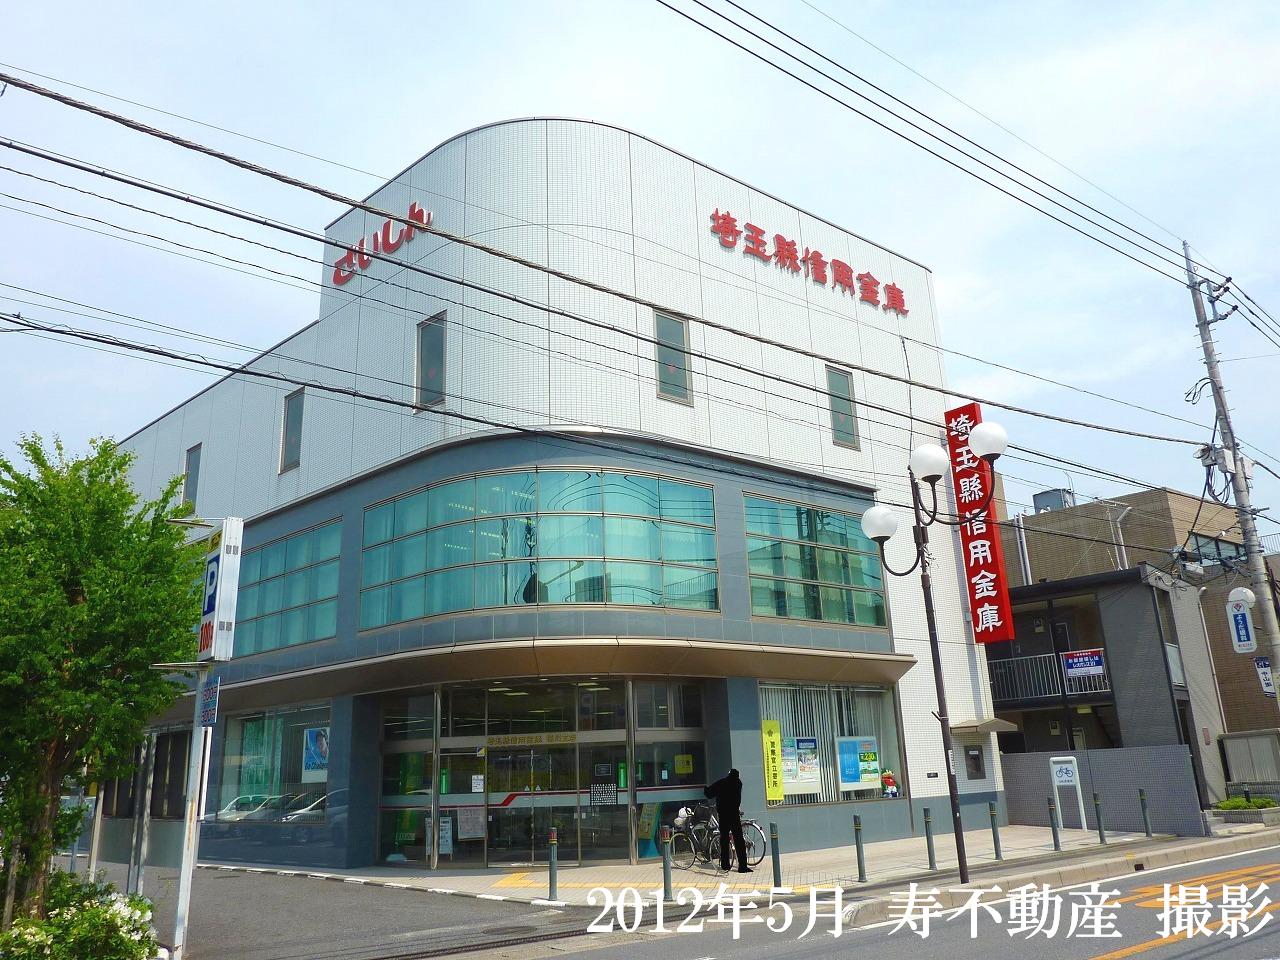 Bank. Saitama Agata credit union Okegawa 487m to the branch (Bank)